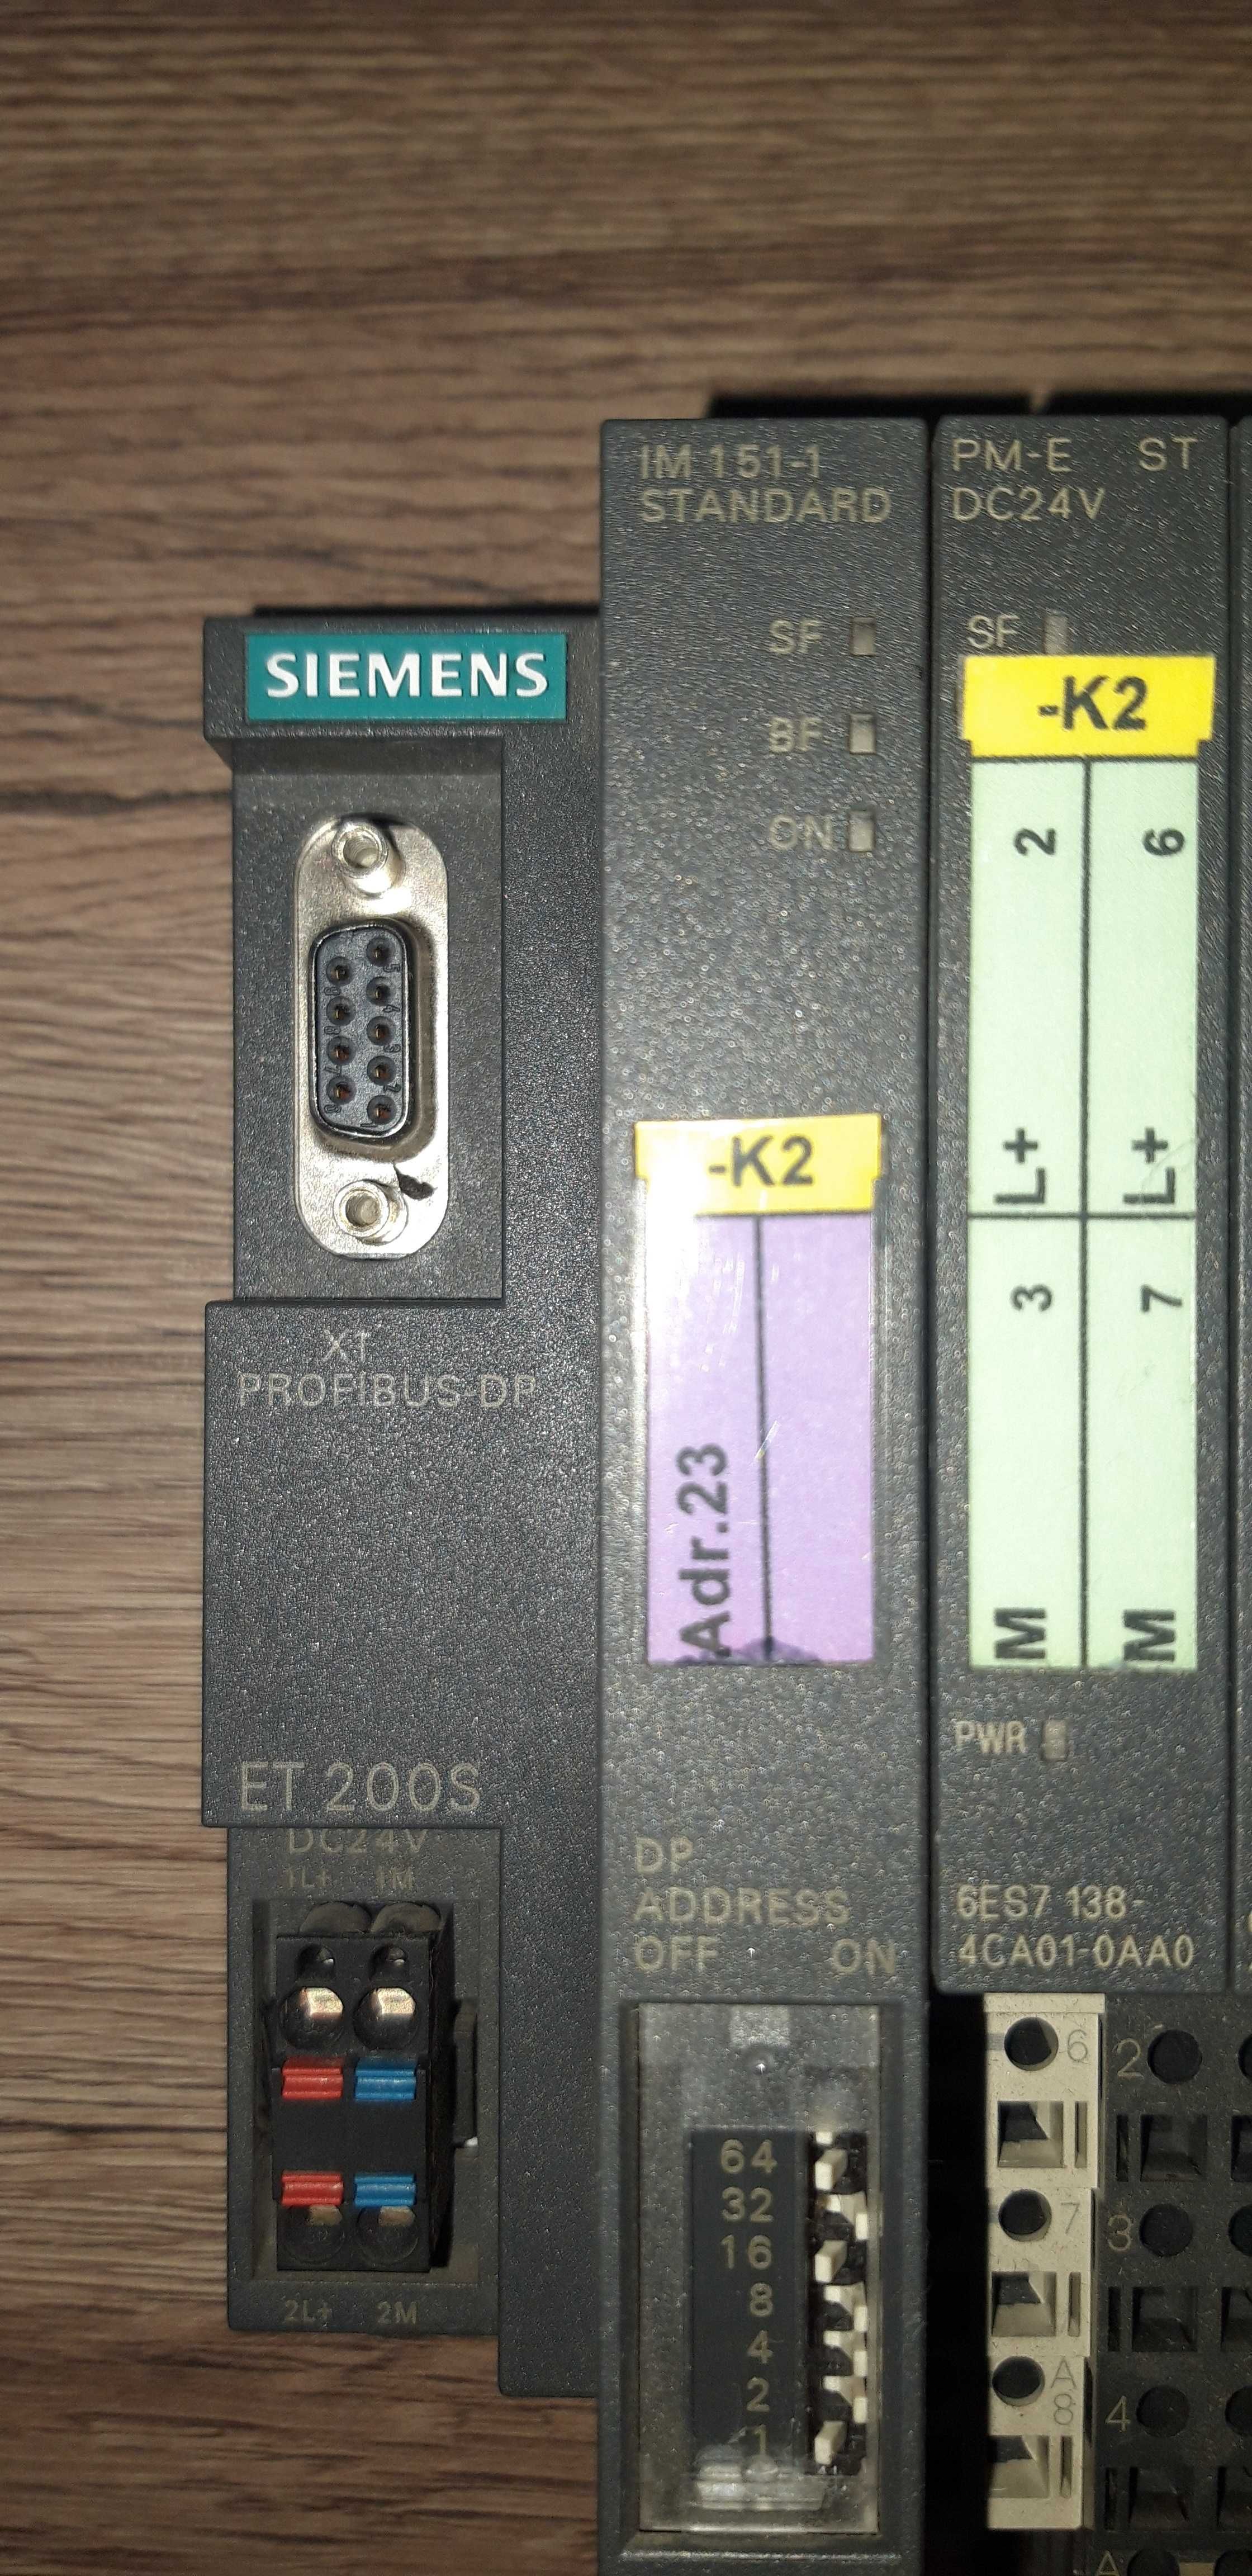 Siemens ET200S IM 151-1 6ES7-151-1AA05-0AB0 Profibus